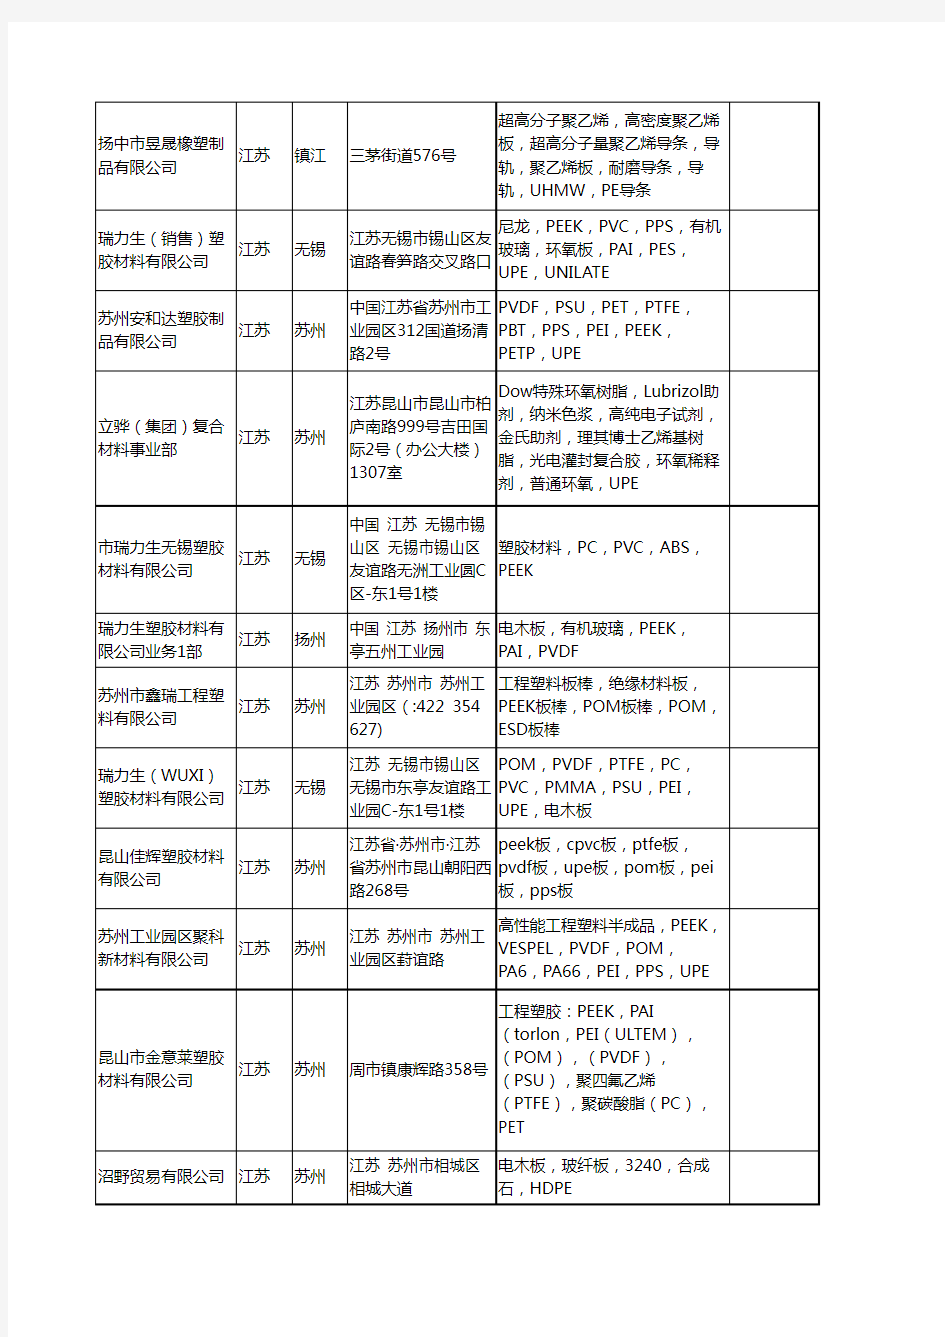 新版江苏省UPE工商企业公司商家名录名单联系方式大全60家